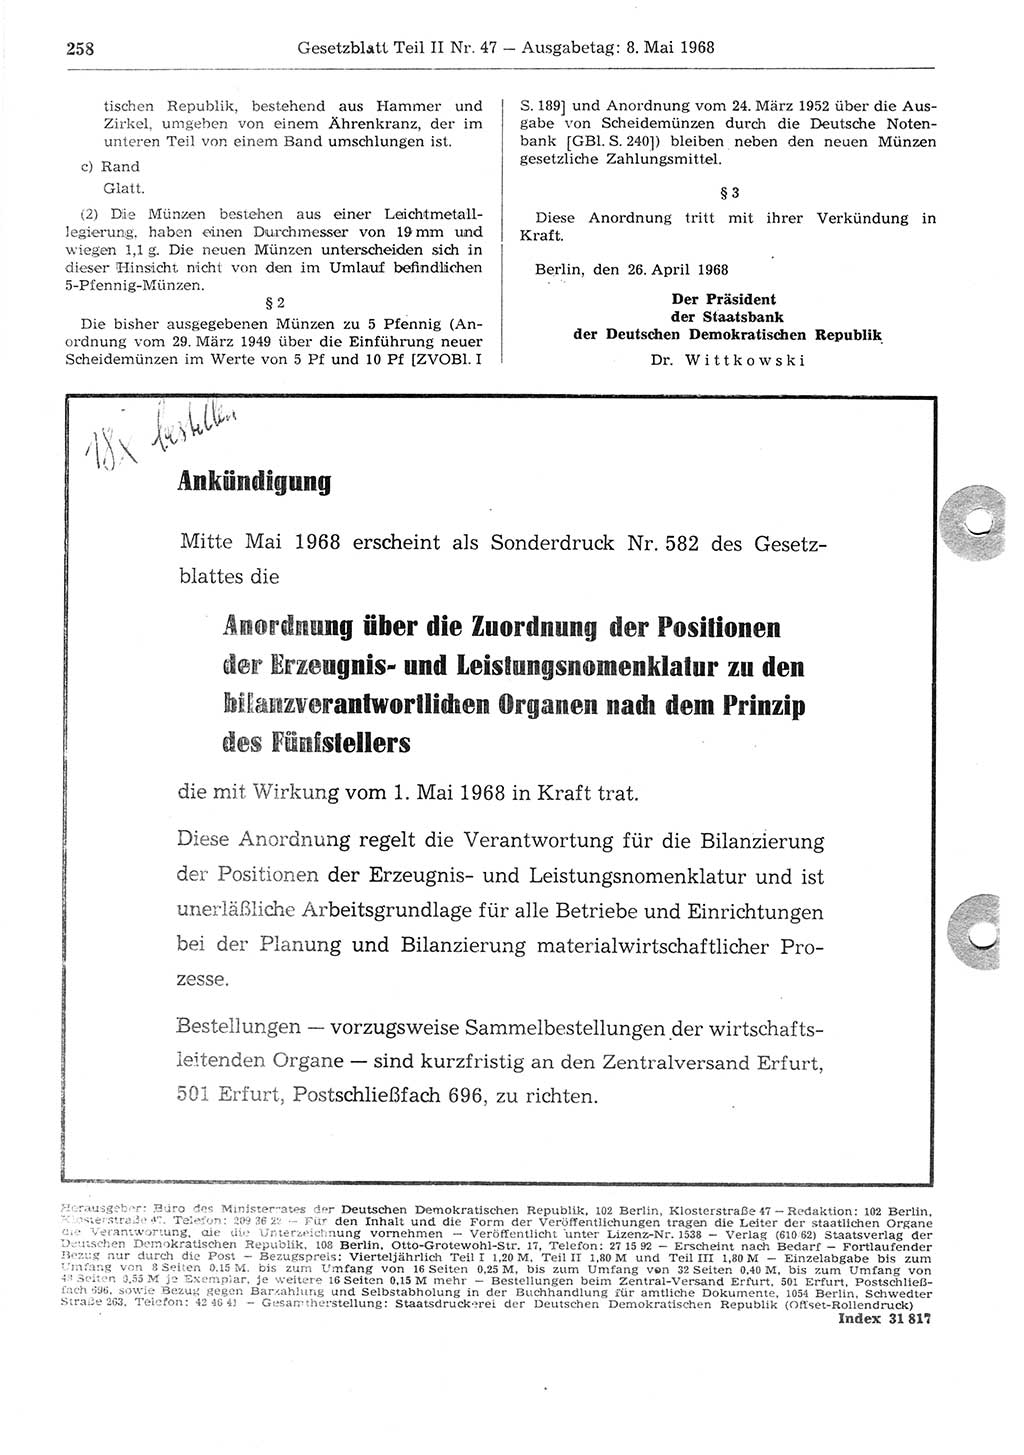 Gesetzblatt (GBl.) der Deutschen Demokratischen Republik (DDR) Teil ⅠⅠ 1968, Seite 258 (GBl. DDR ⅠⅠ 1968, S. 258)